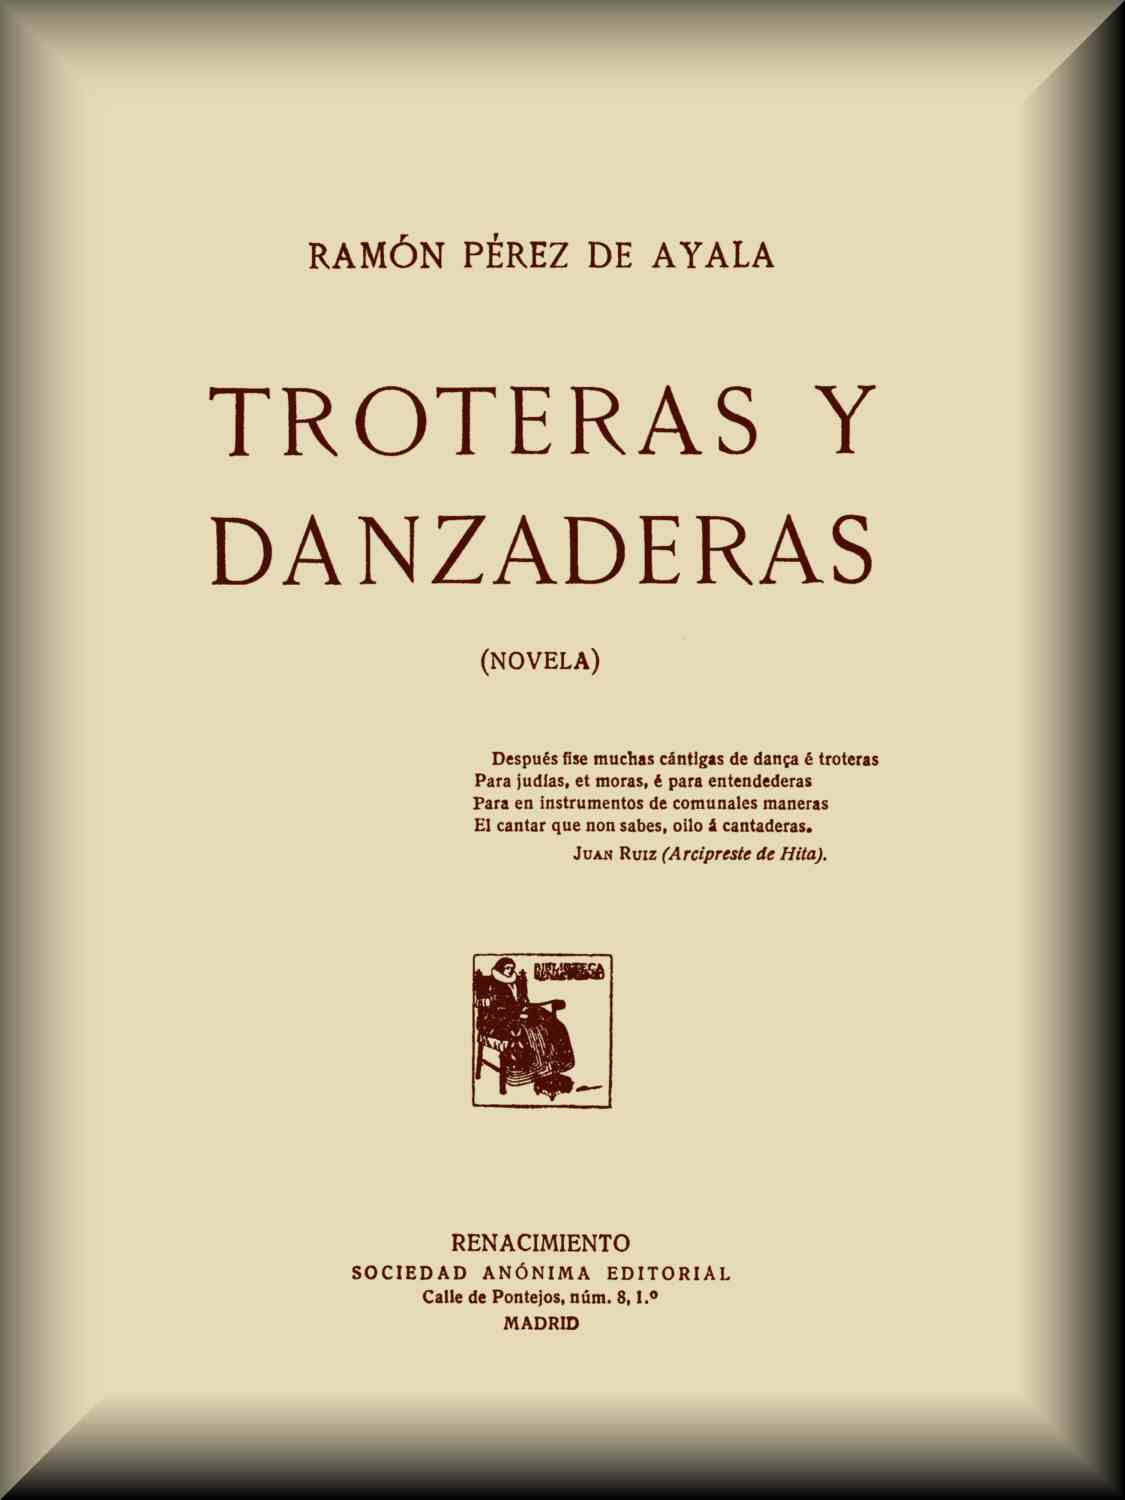 lote estanque contrabando Troteras y danzaderas, by Ramón Pérez de Ayala—A Project Gutenberg eBook